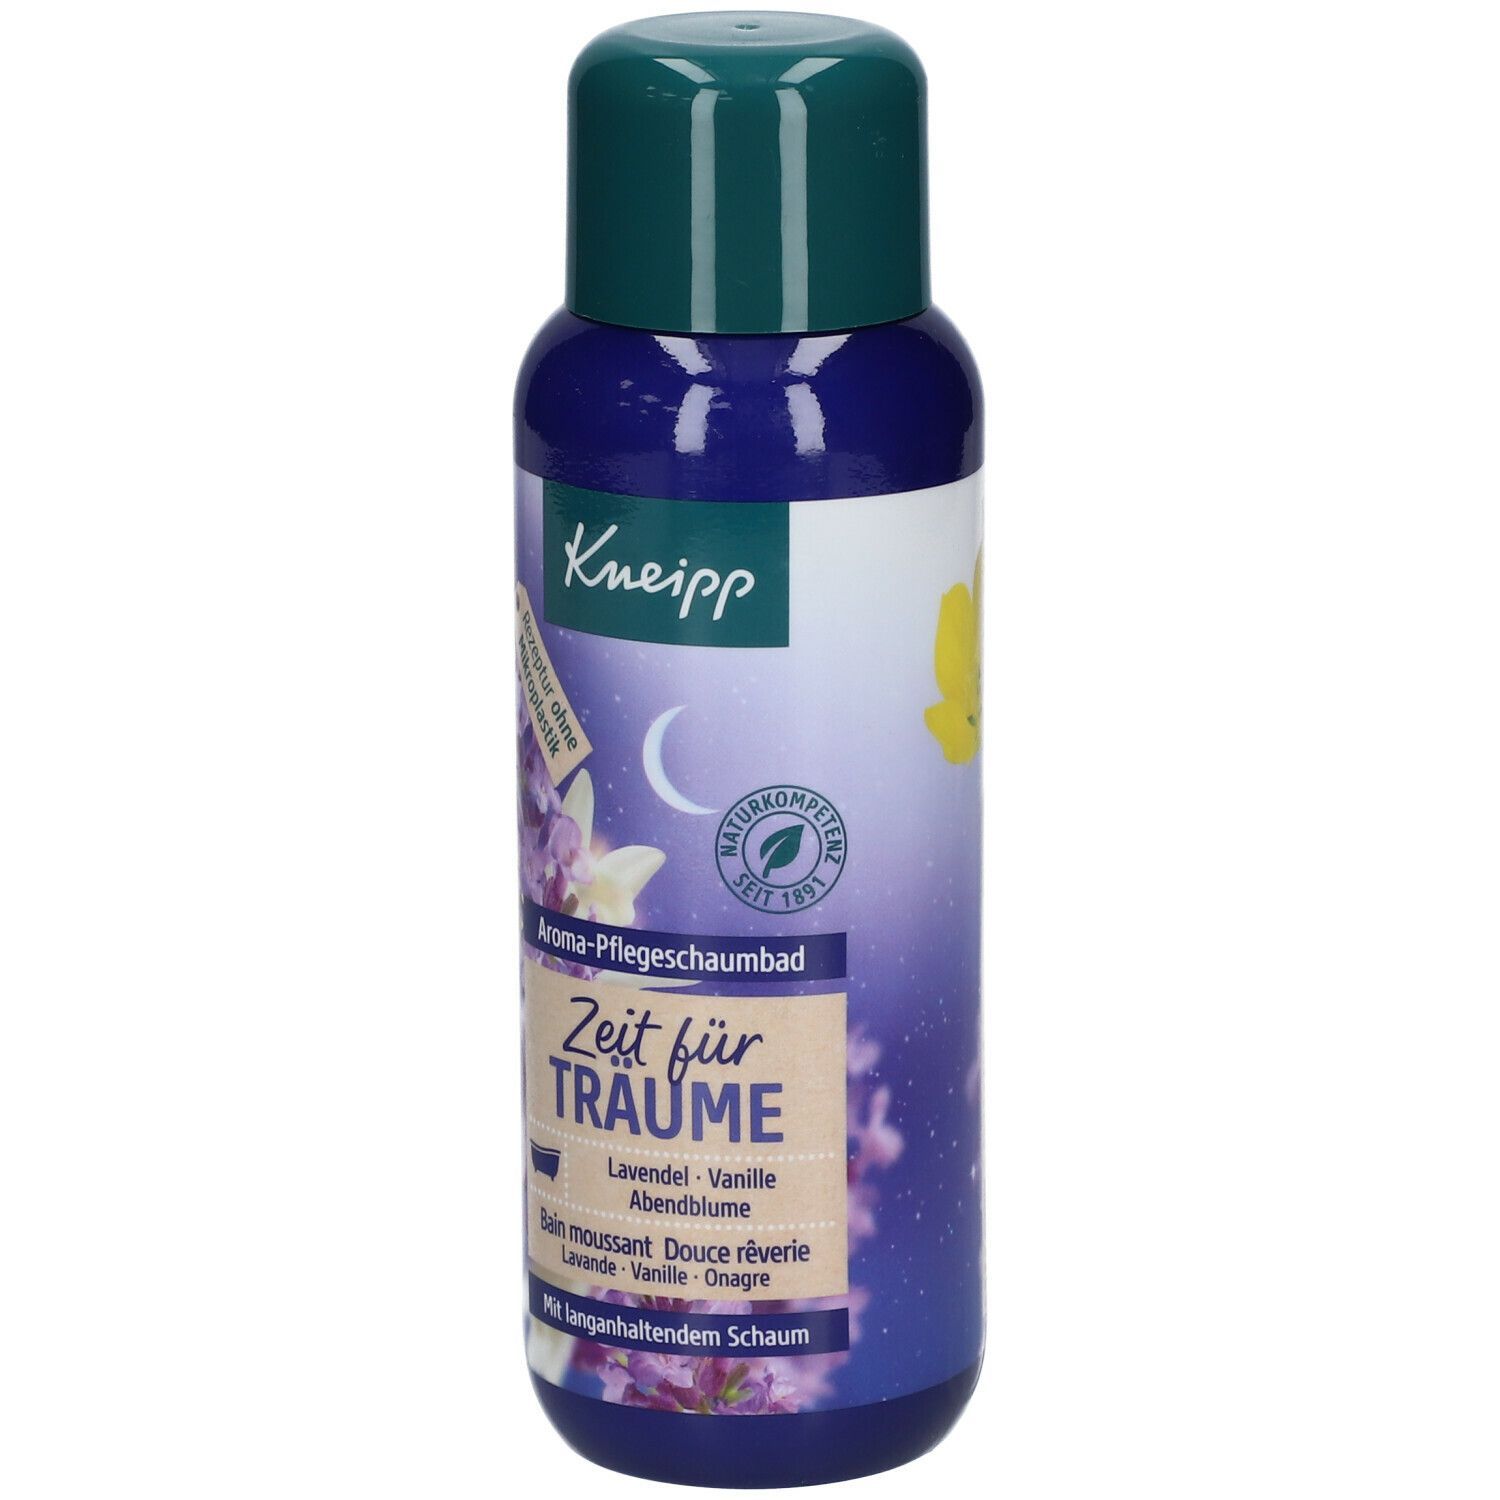 Kneipp® Aroma-Pflegeschaumbad Zeit für Träume